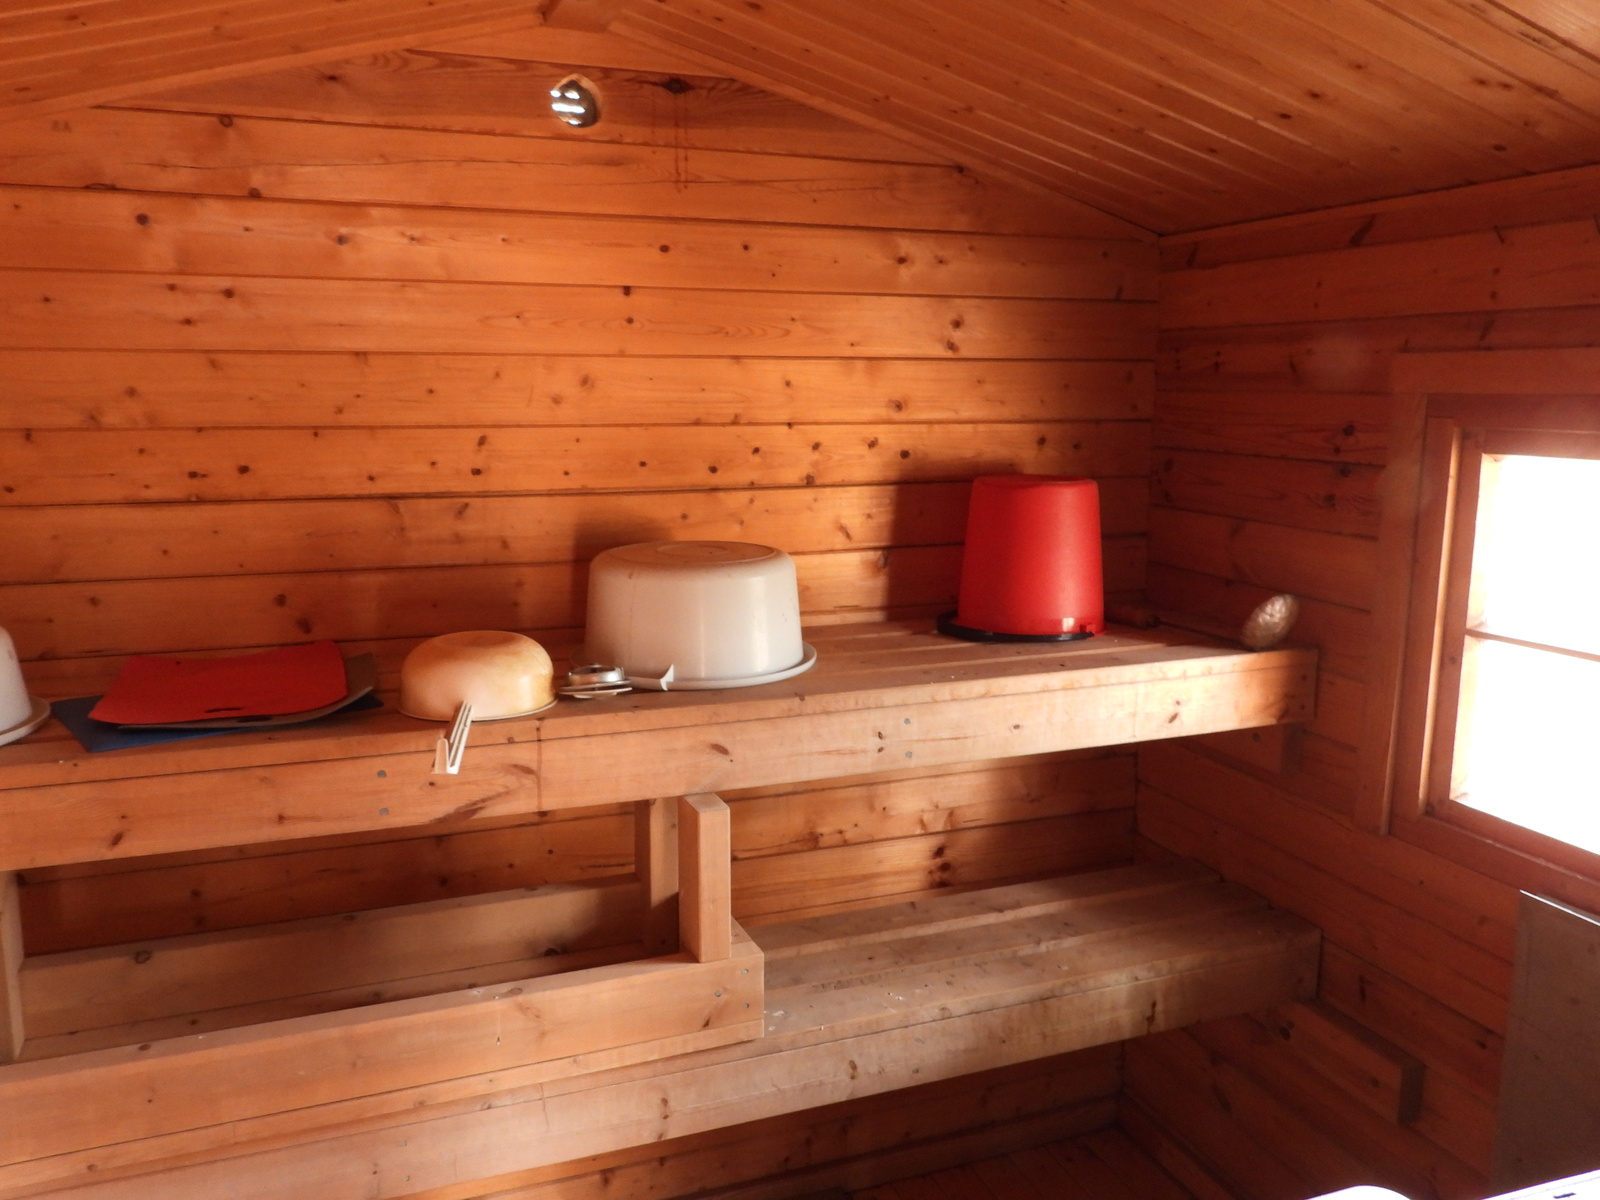 Müüa looduskaunis saunaga mereäärne maakodu Soomes Solid House kinnisvarabüroo maakleri kaudu kinnisvara mere ääres